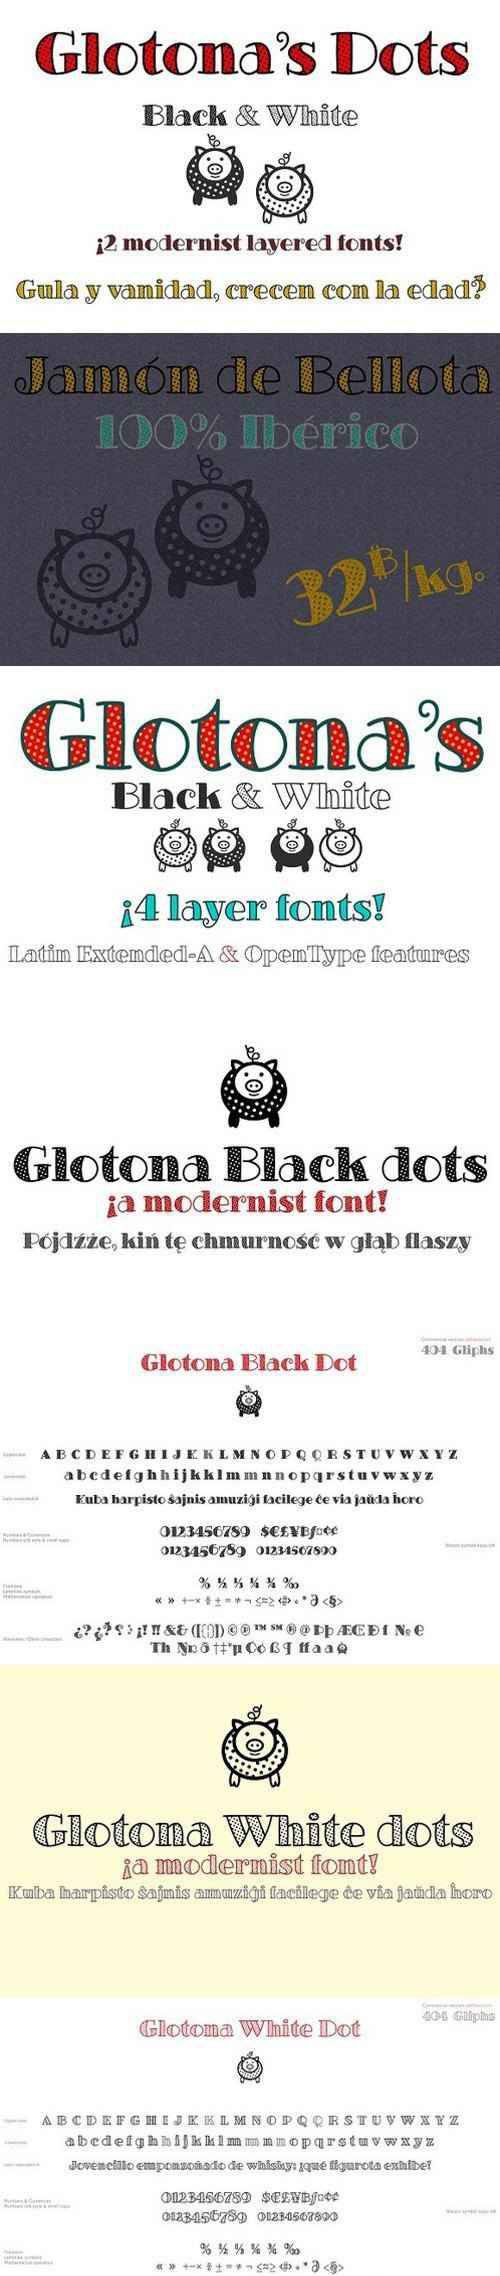 Glotona Dots 1492000